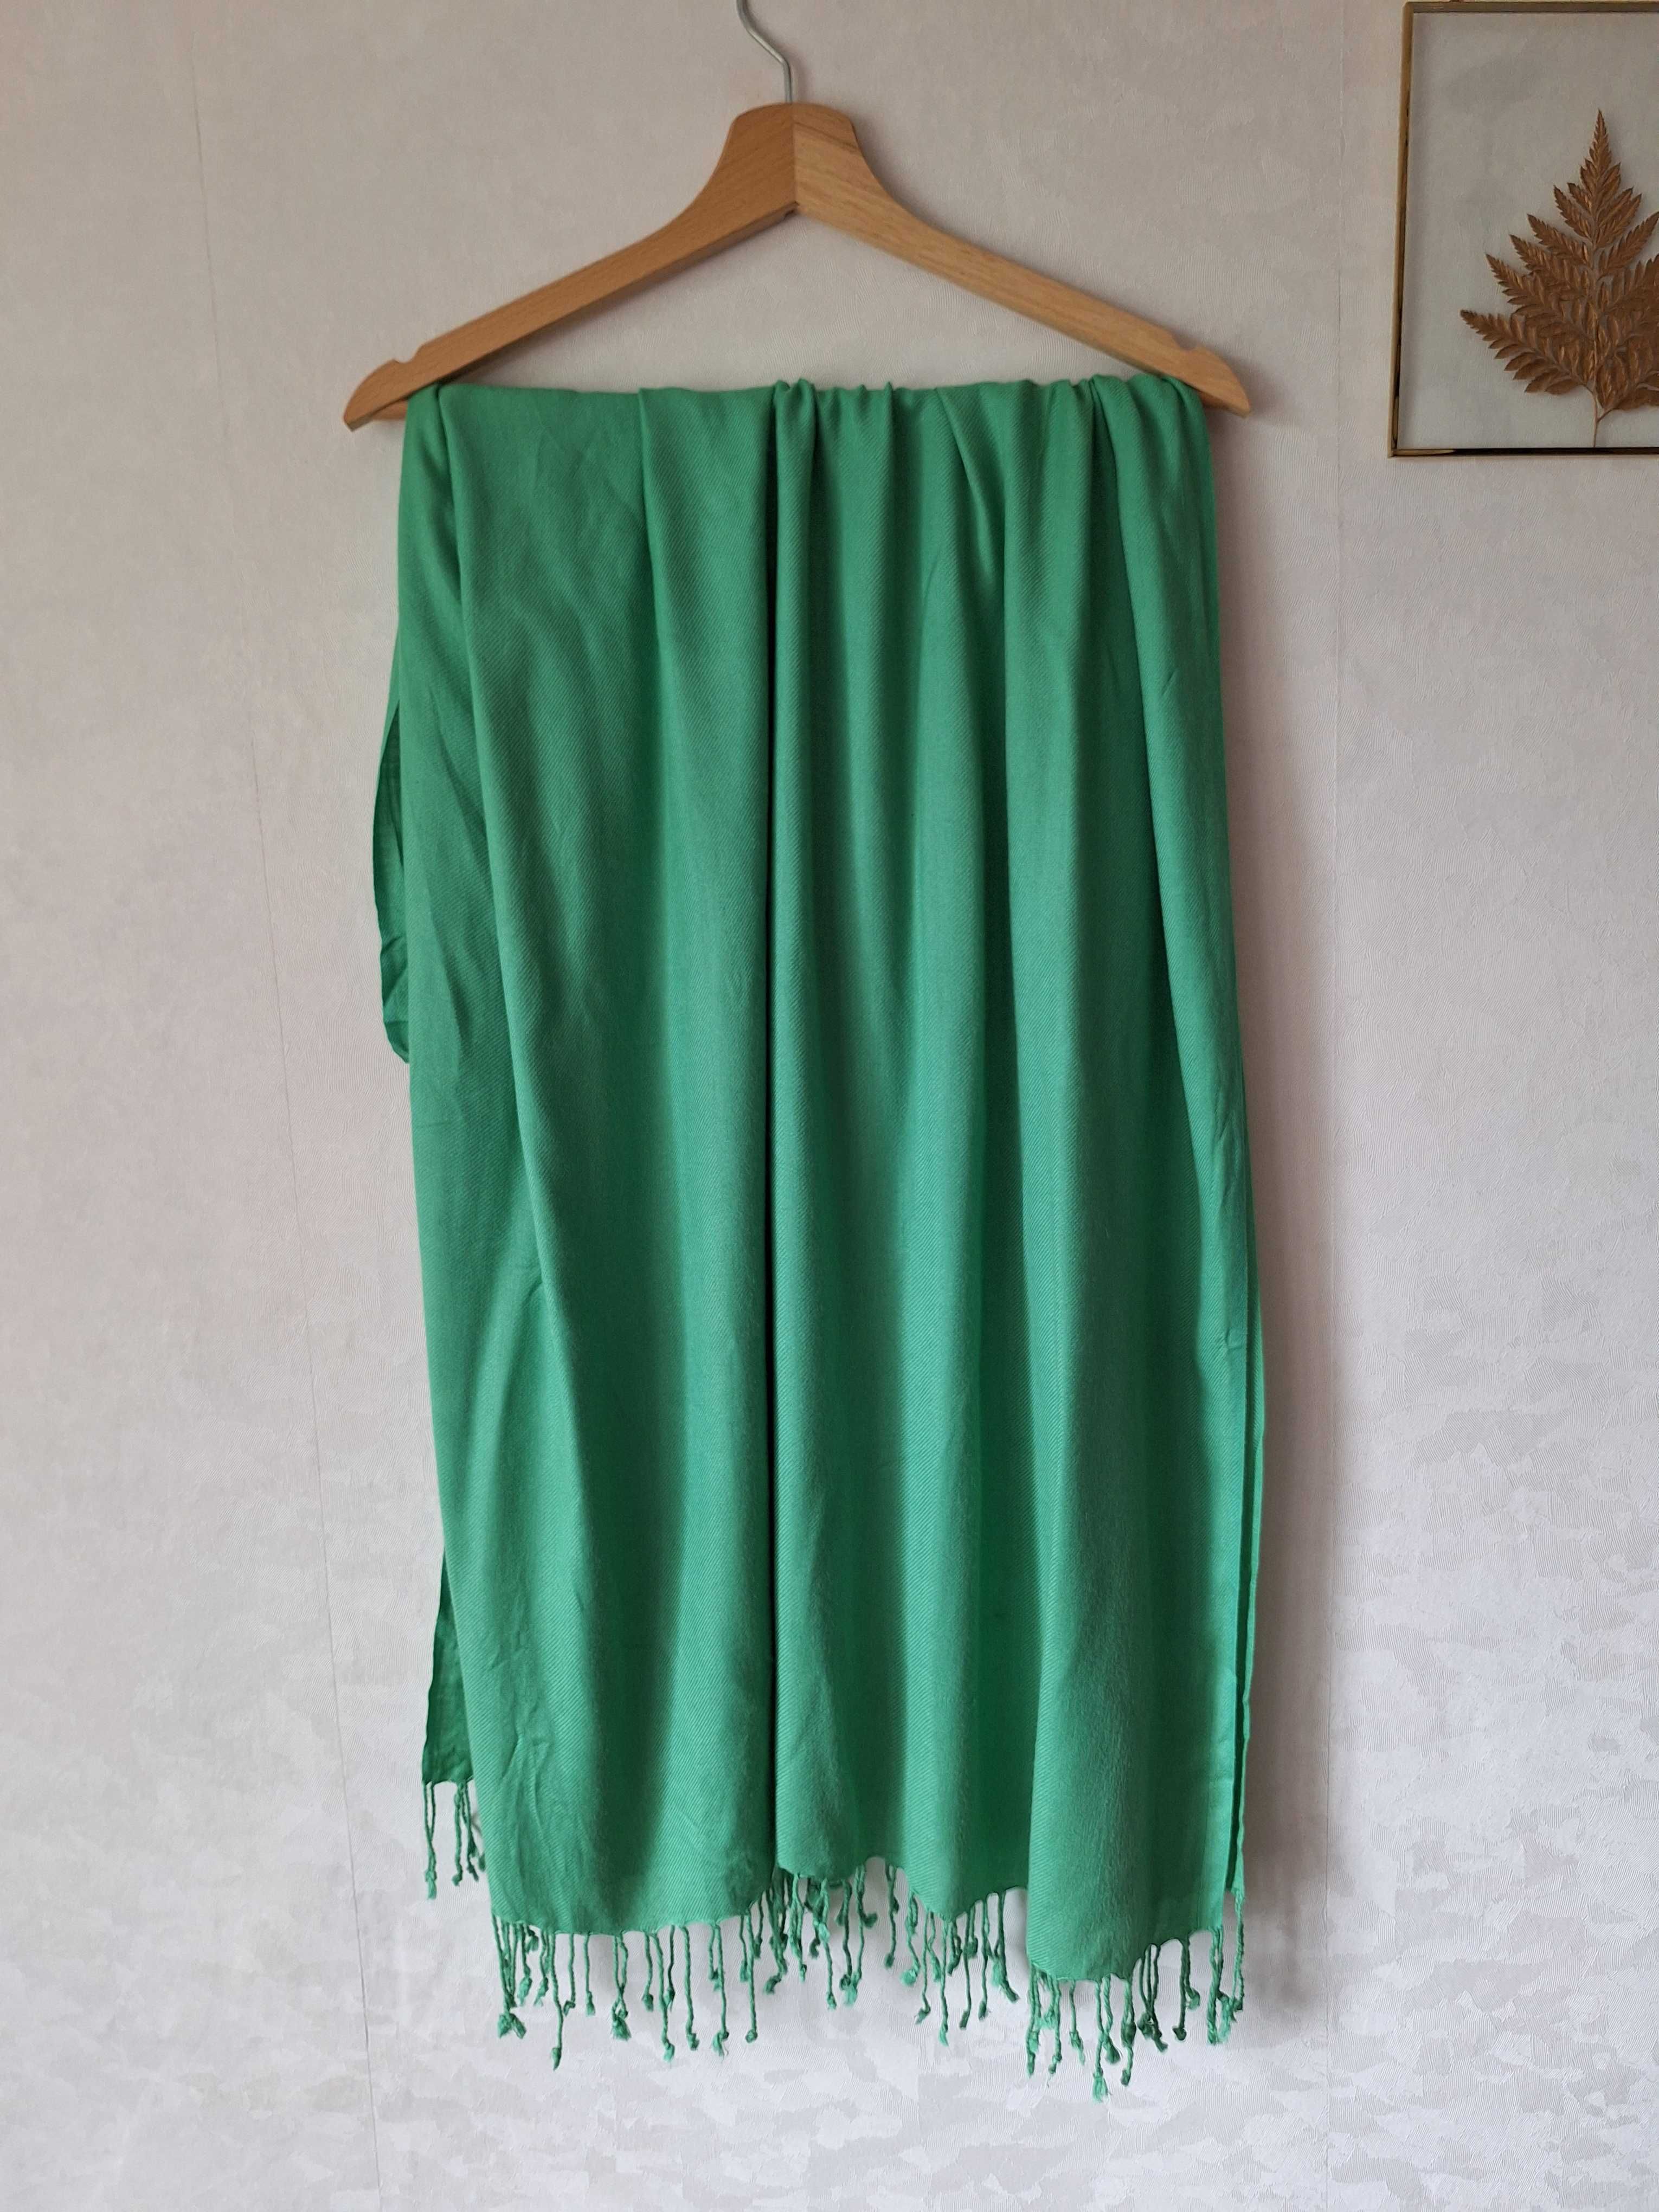 Duża zielona chusta z wiskozy szeroka jednokolorowa gładka z frędzlami